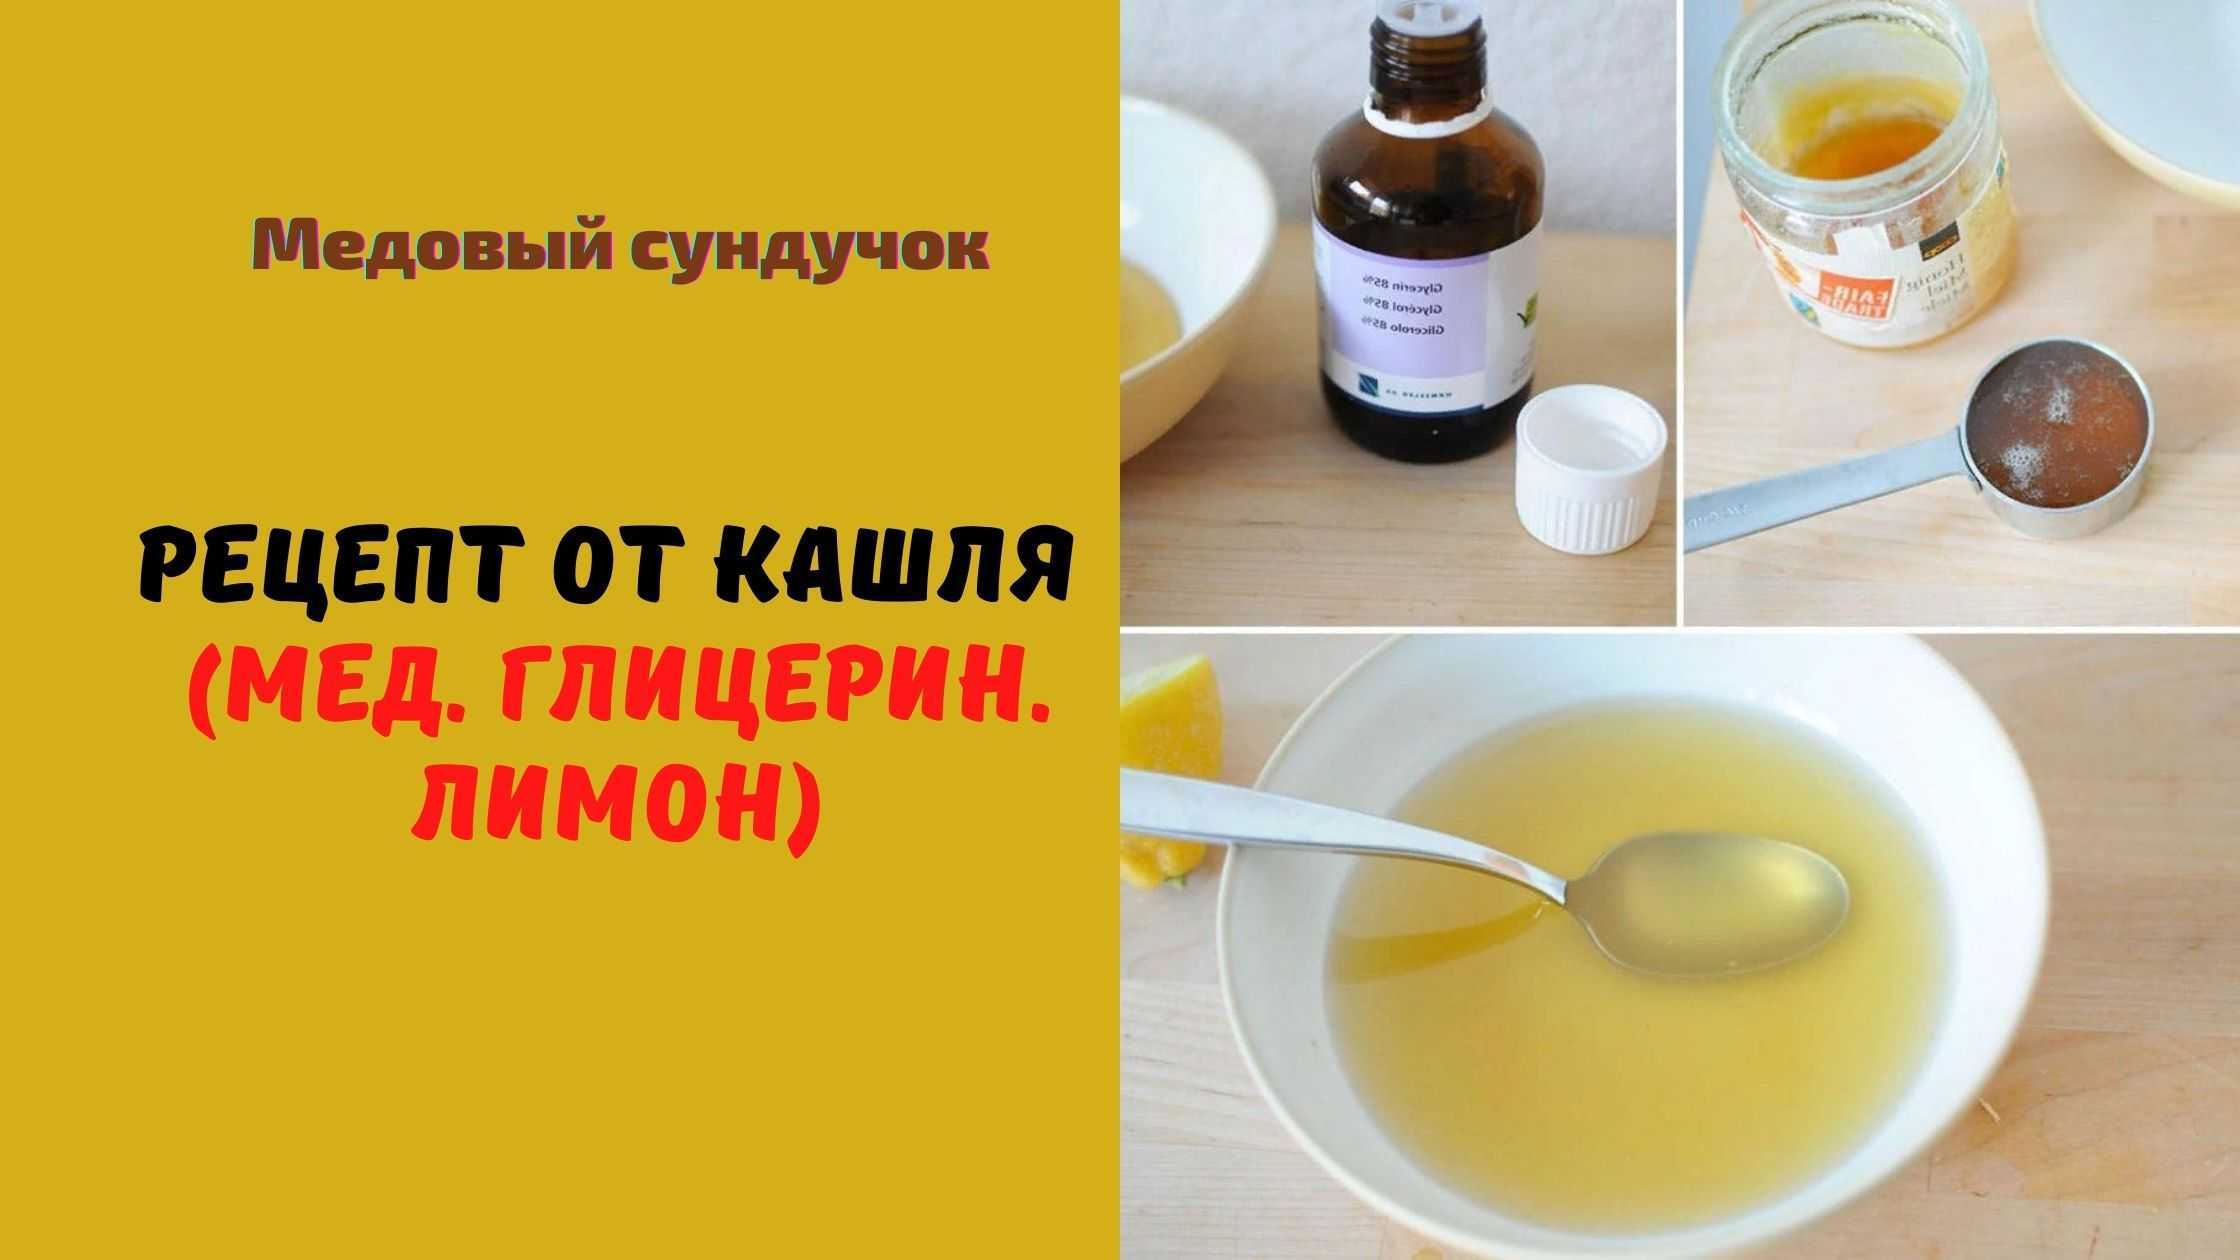 Лимон с глицерином и медом от кашля: рецепты, польза и вред, отзывы